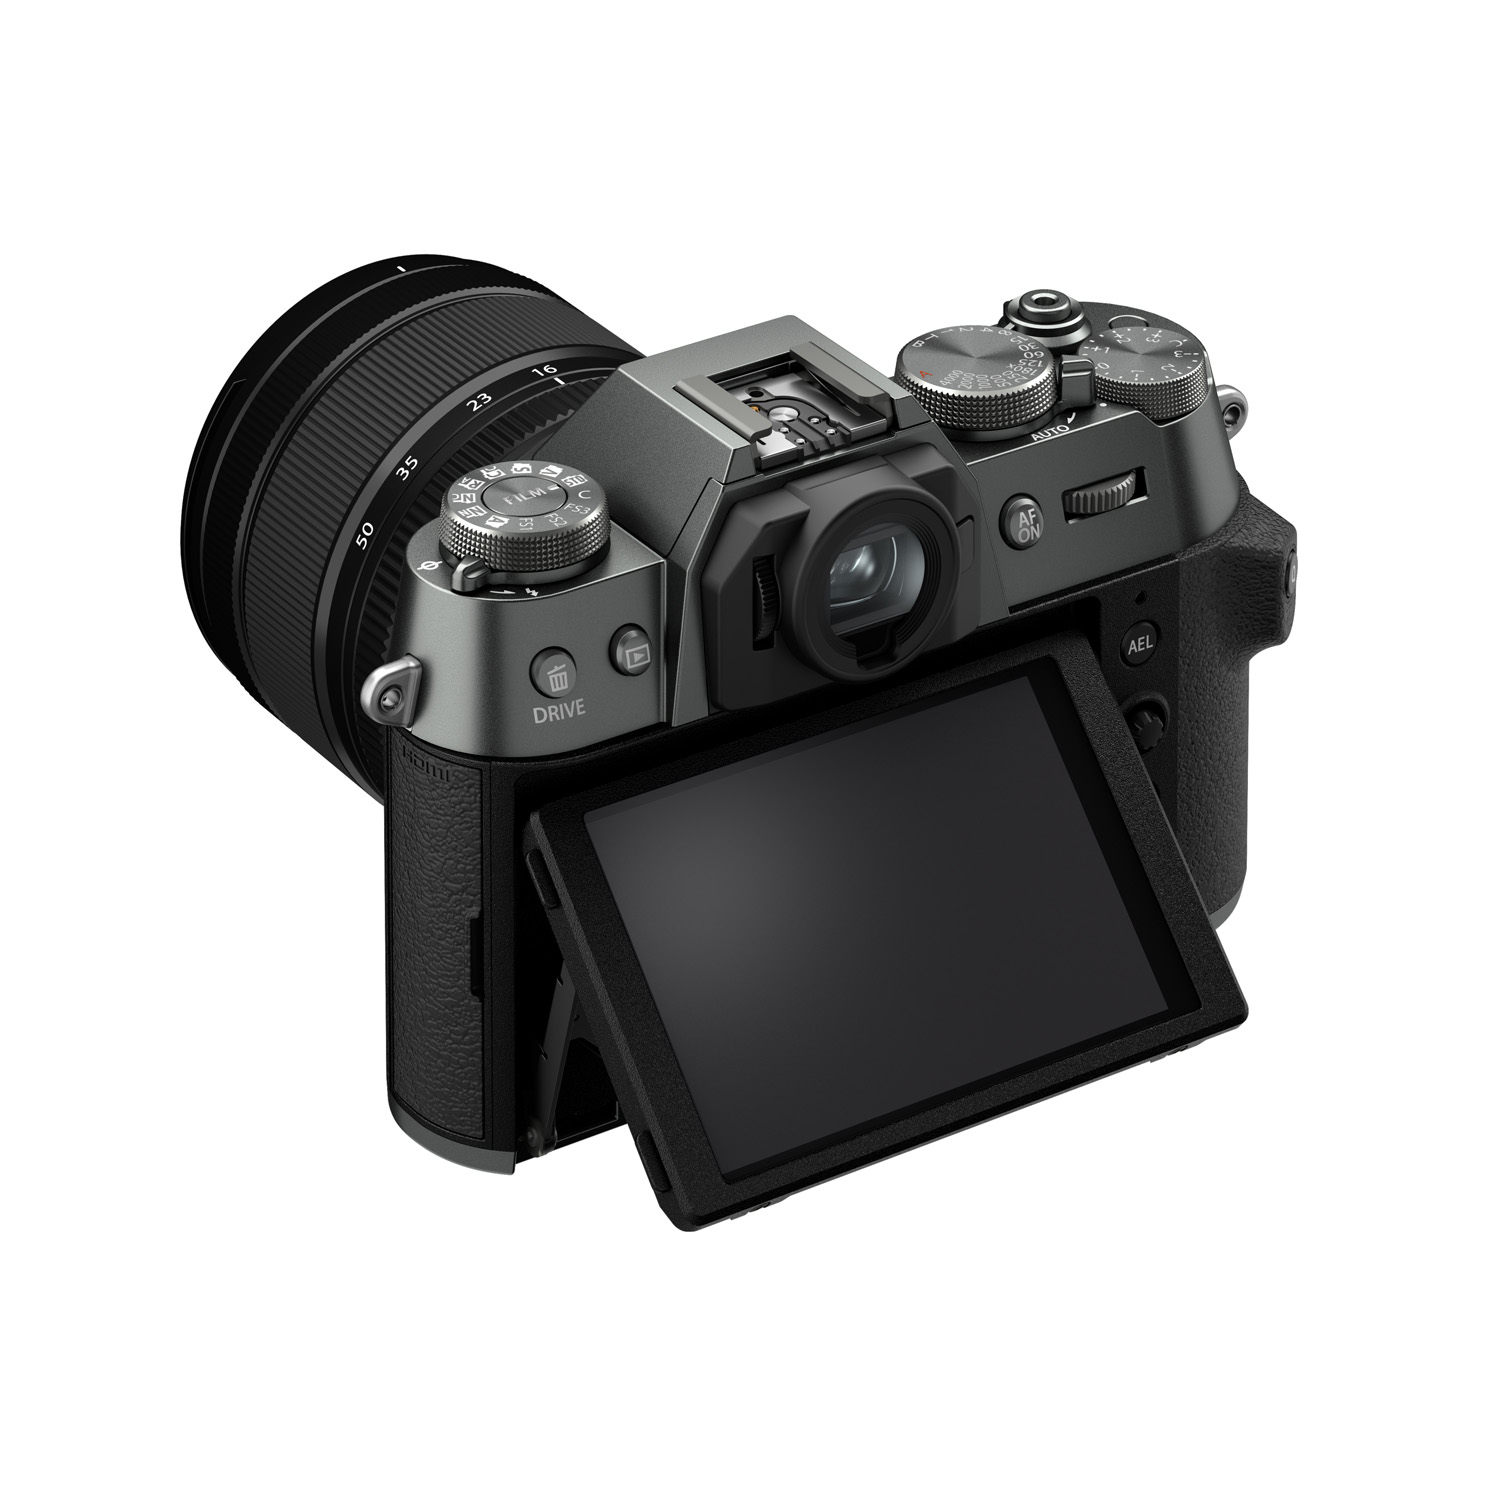 Снимок камеры Fujifilm X-T50 на белом фоне, вид сзади